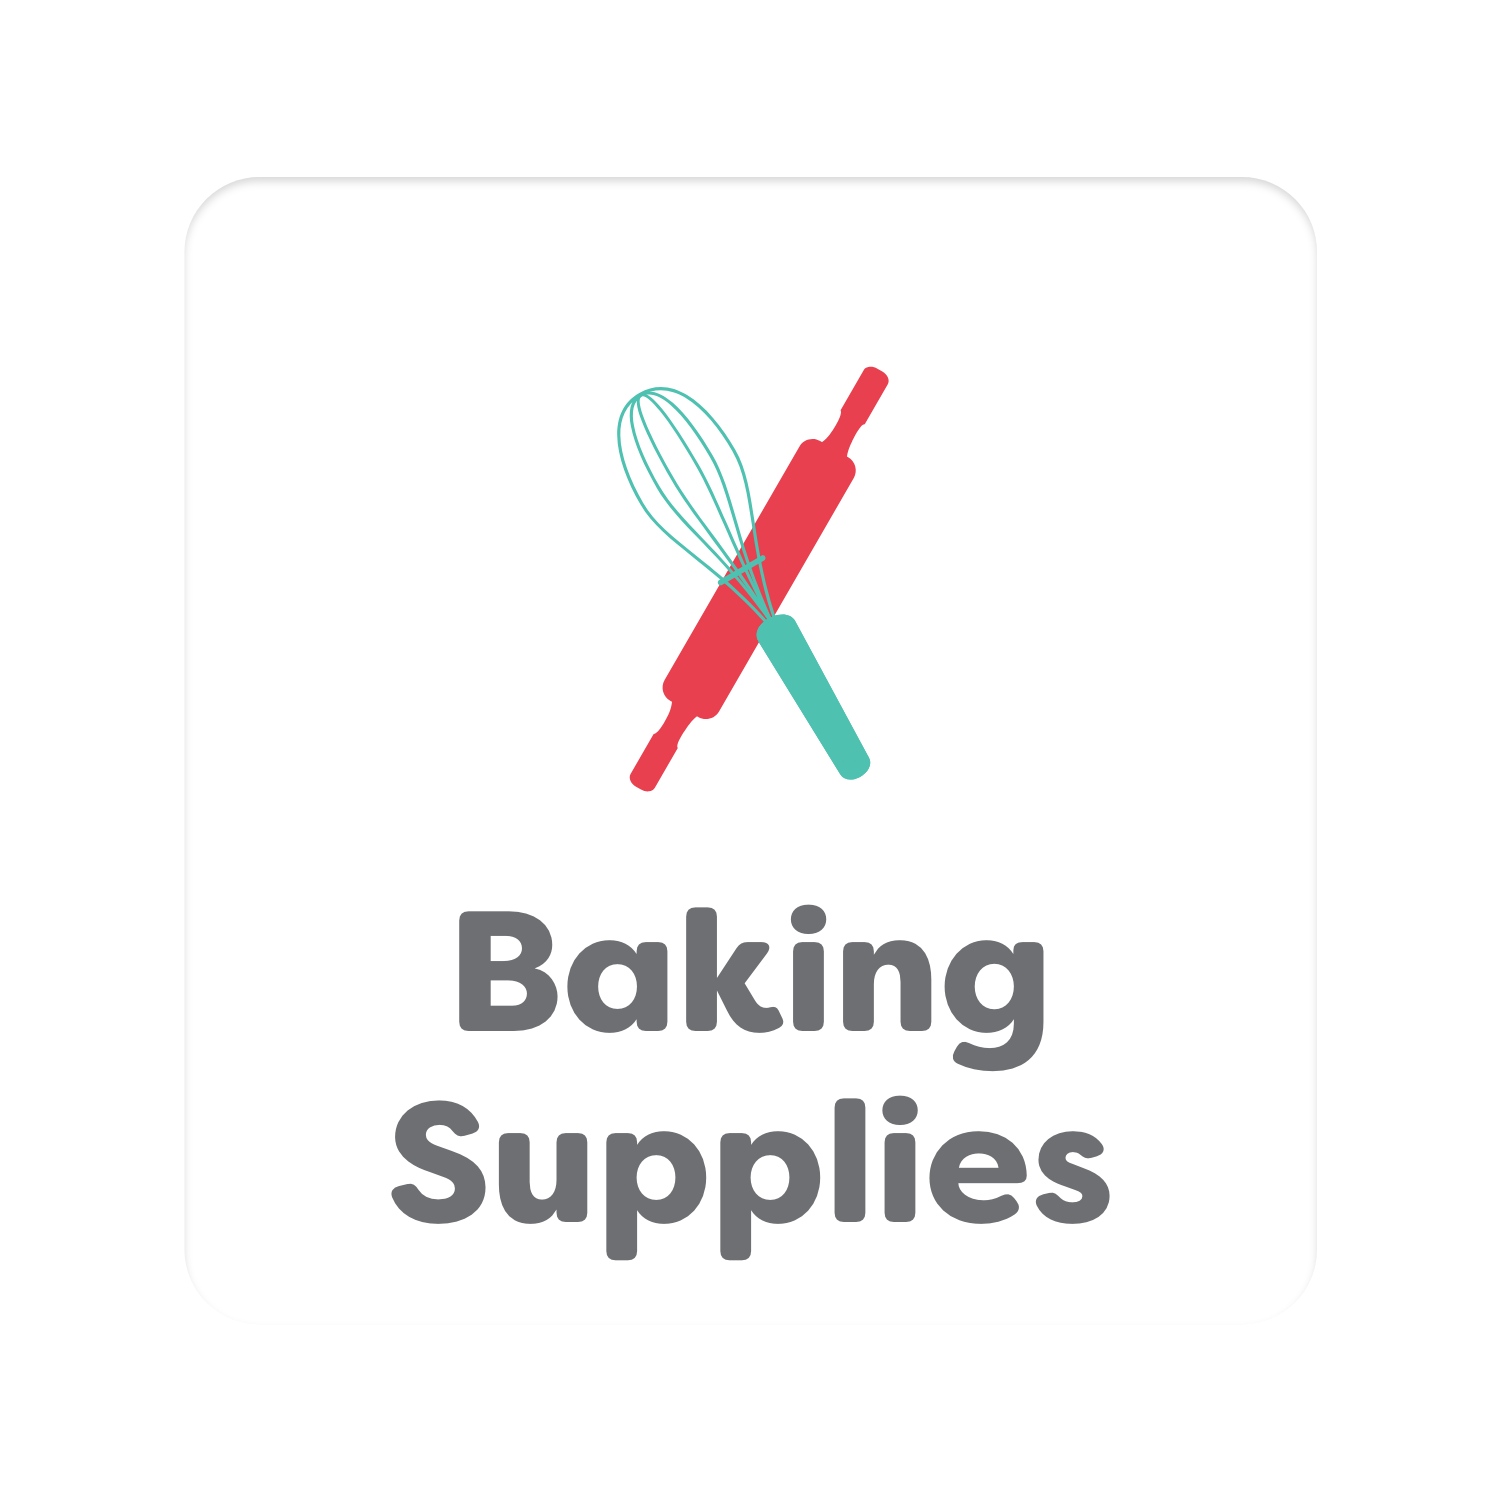 KBC-Baking Supplies